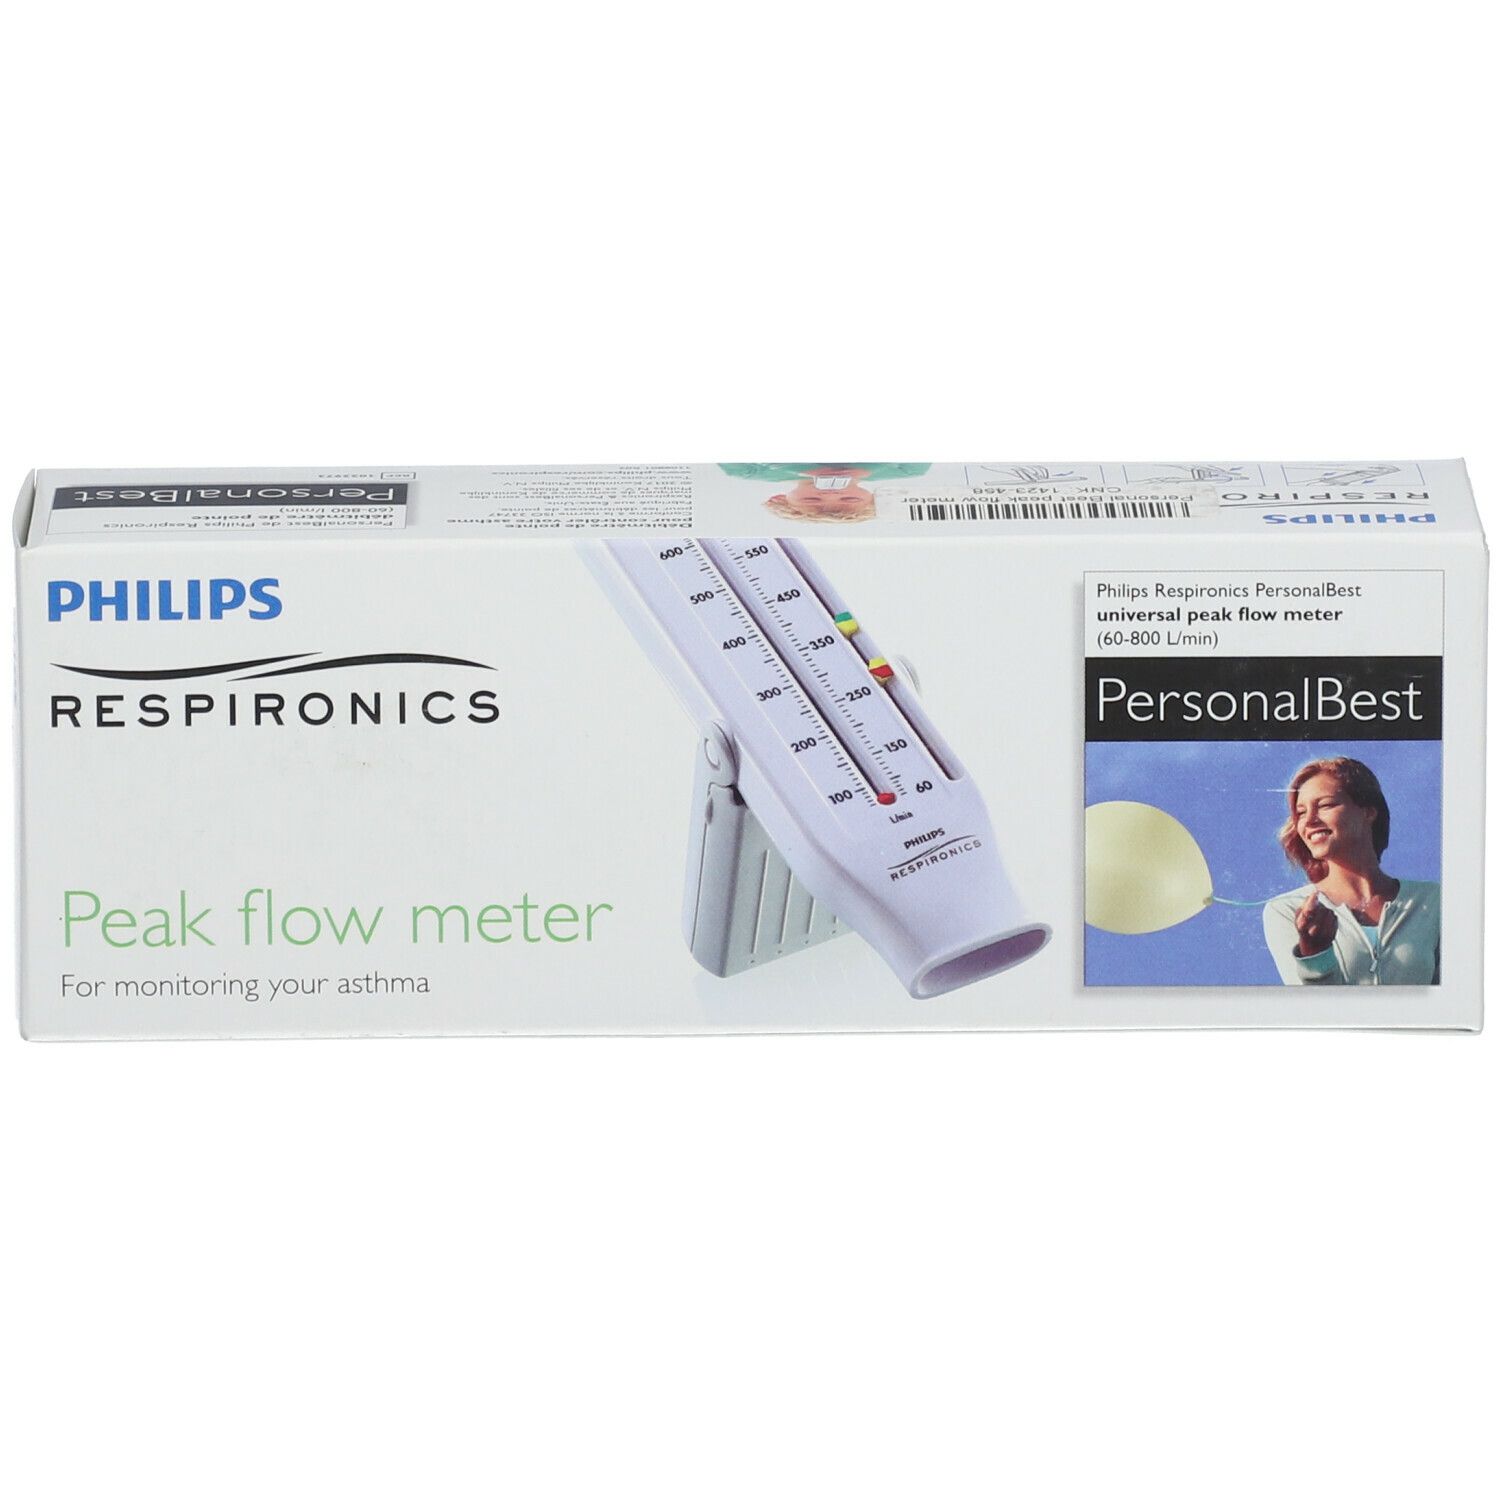 PHILIPS Respironics Peak Flow Meter